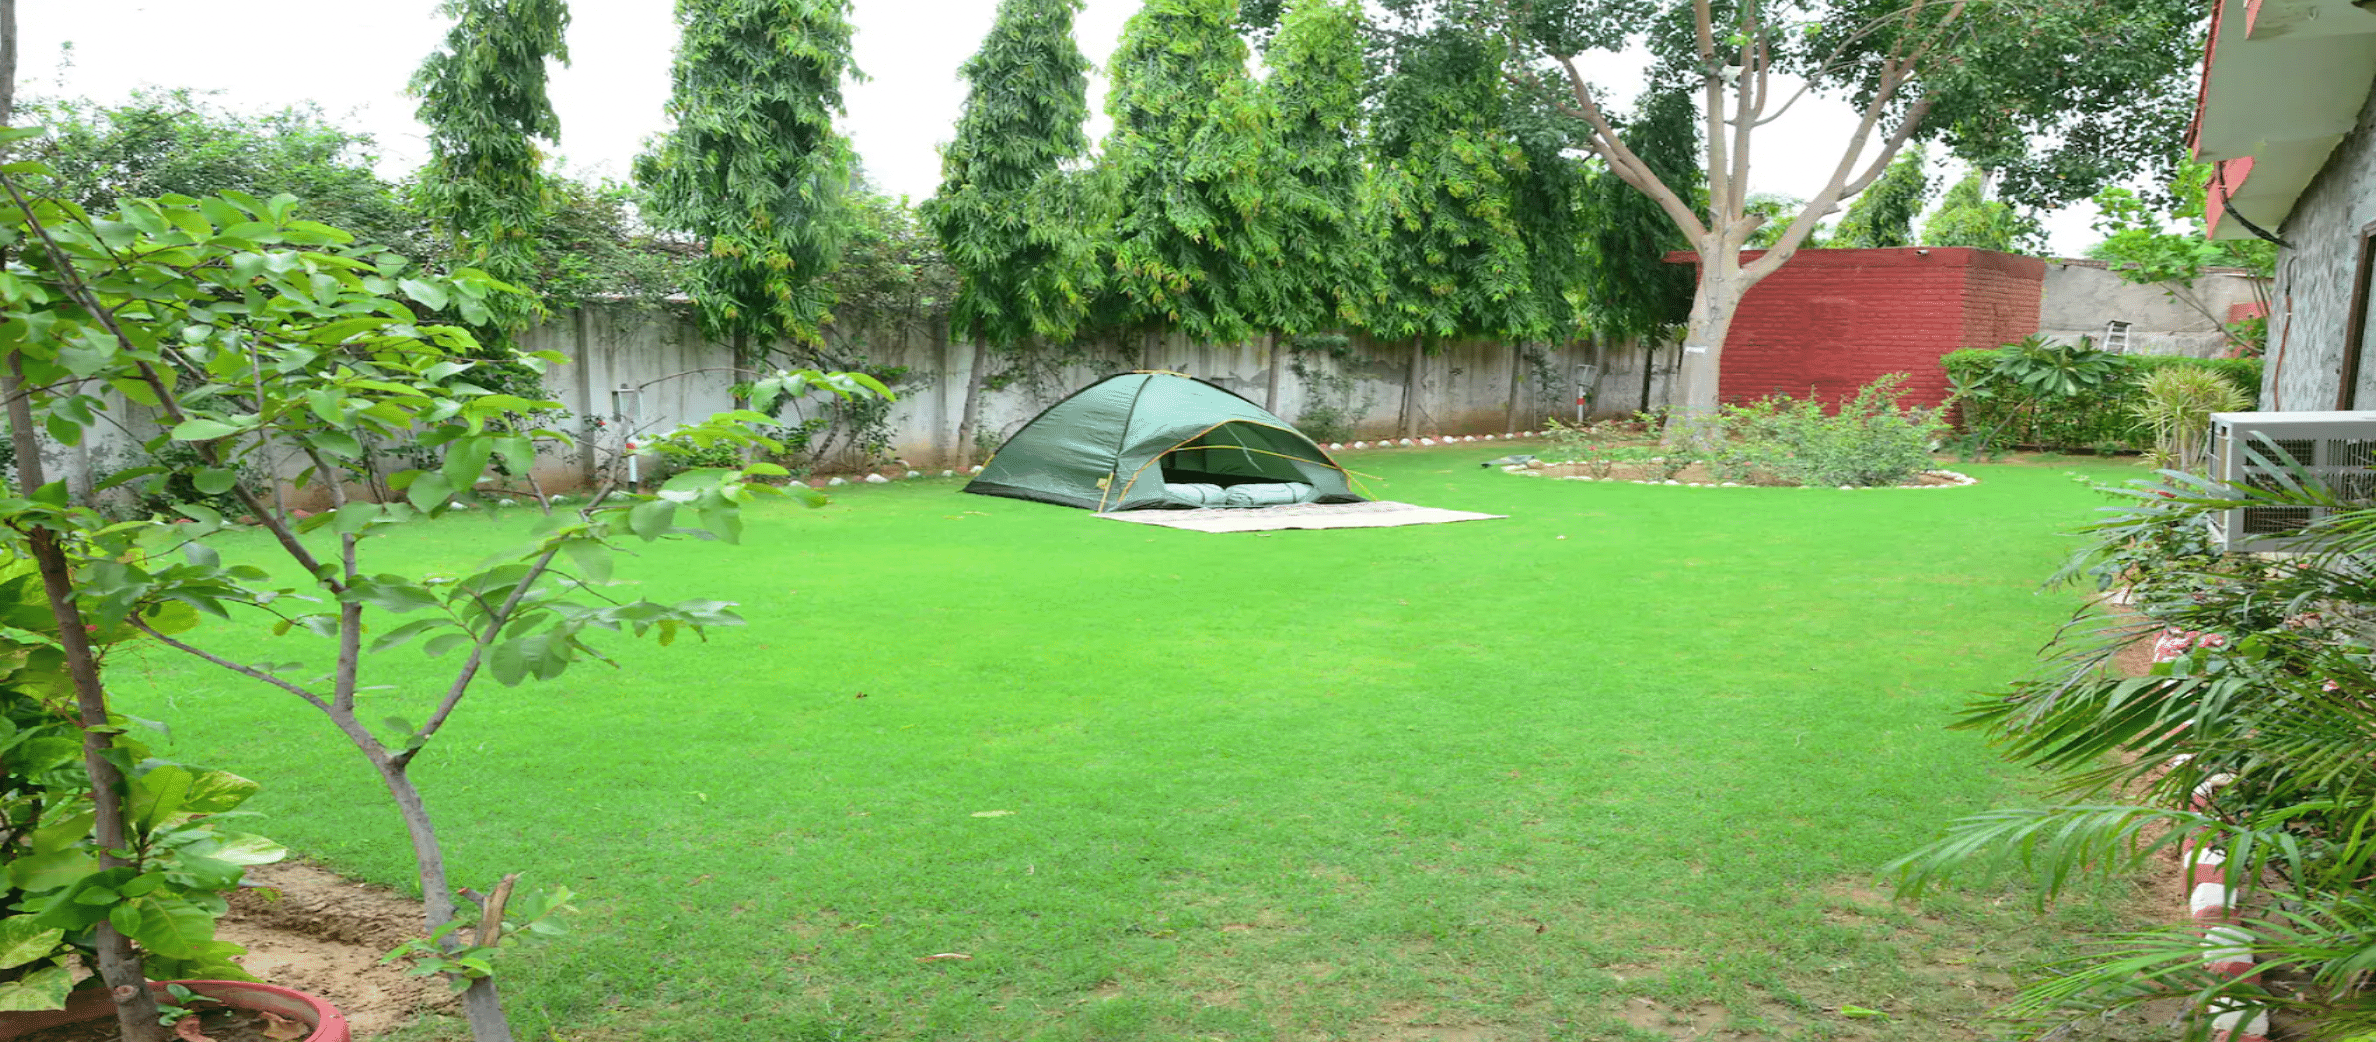 Talwar Farm in Manesar, Gurgaon